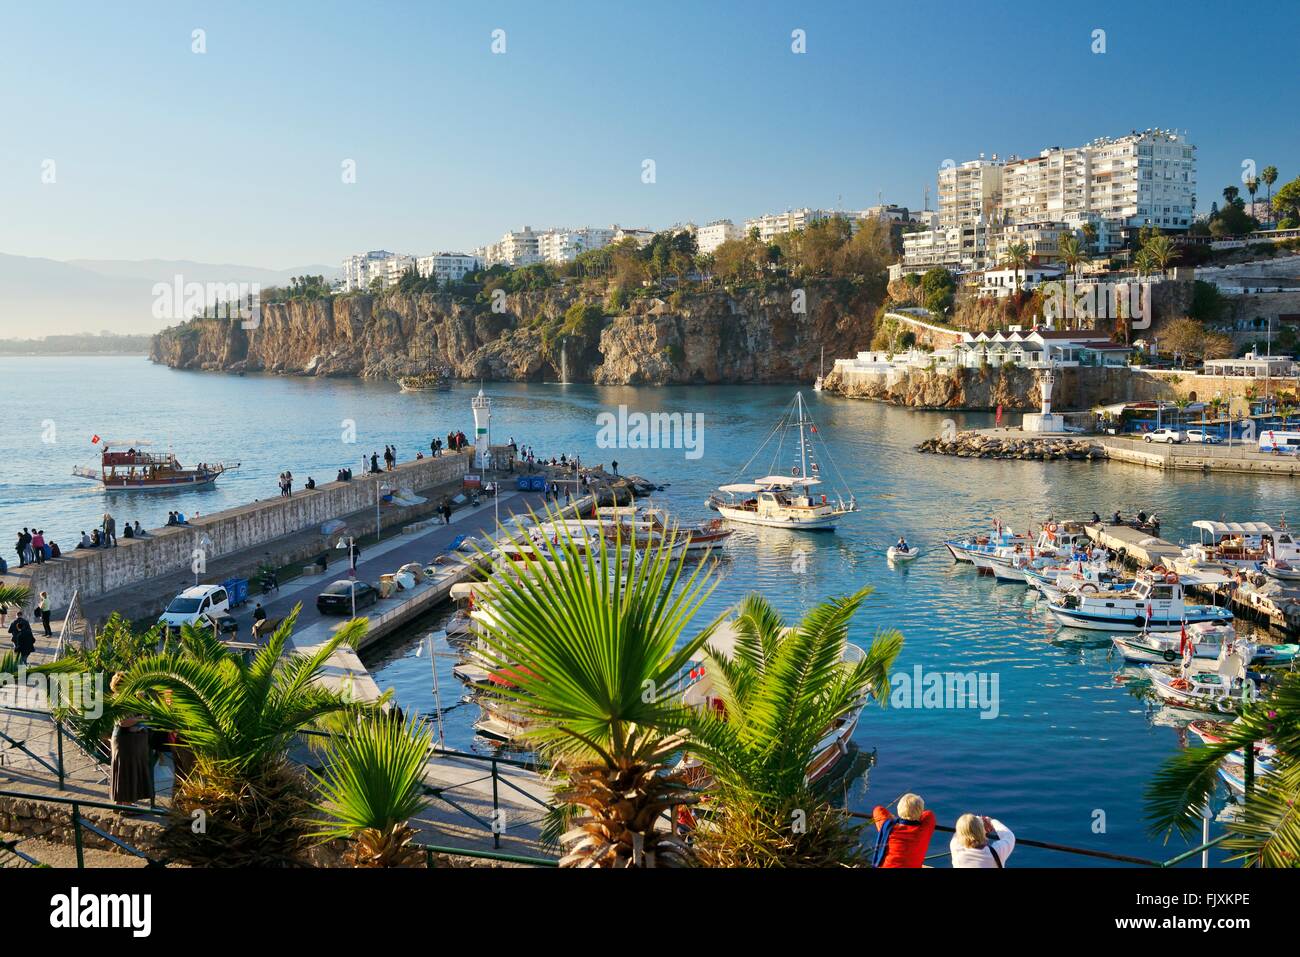 Kaleici ist das historische Zentrum der Stadt Antalya, Türkei. NW auf den alten Hafen und Yachthafen an der Mittelmeerküste Stockfoto